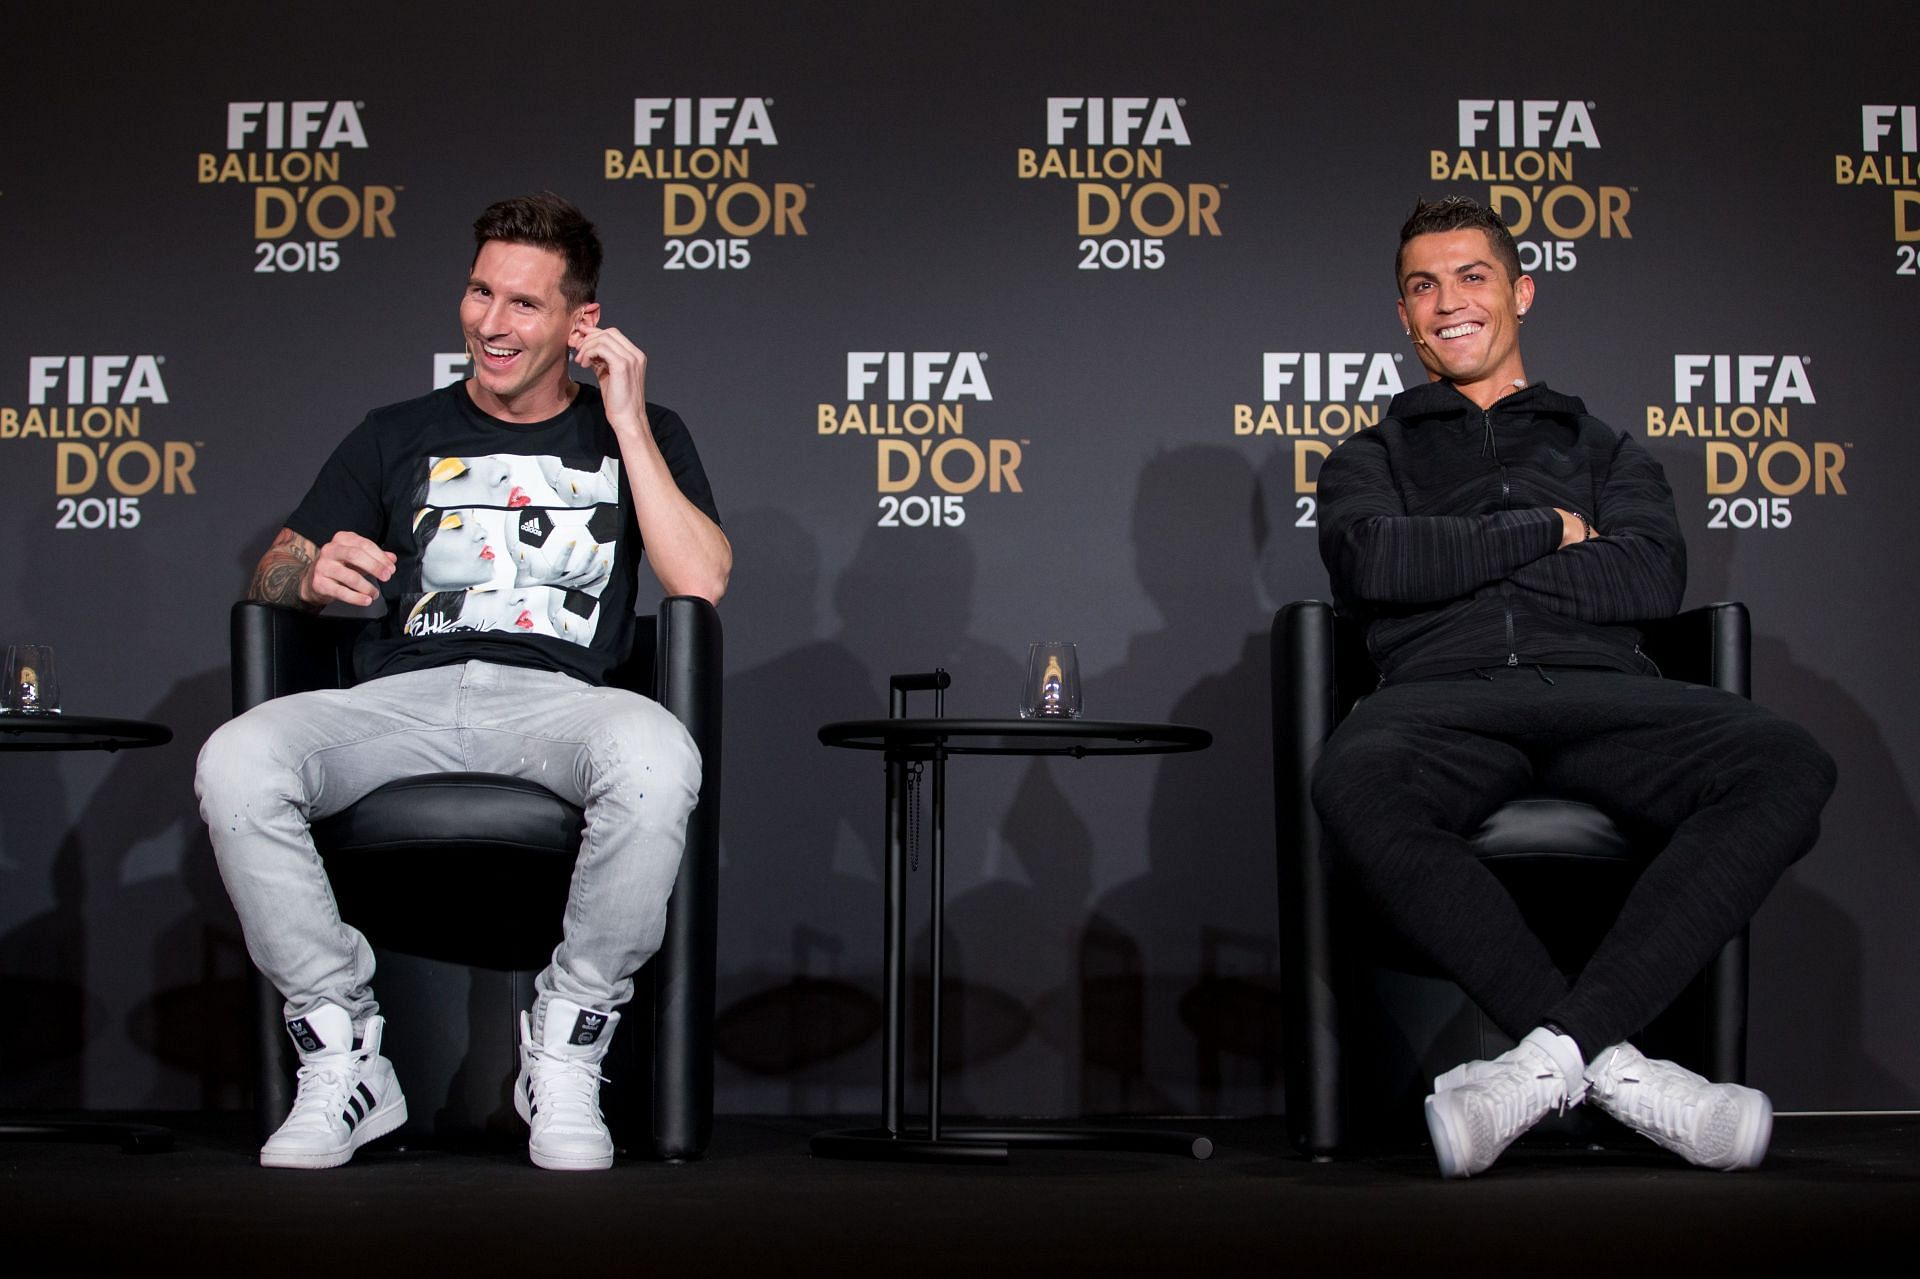 Lionel Messi and Cristiano Ronaldo (via Getty Images)